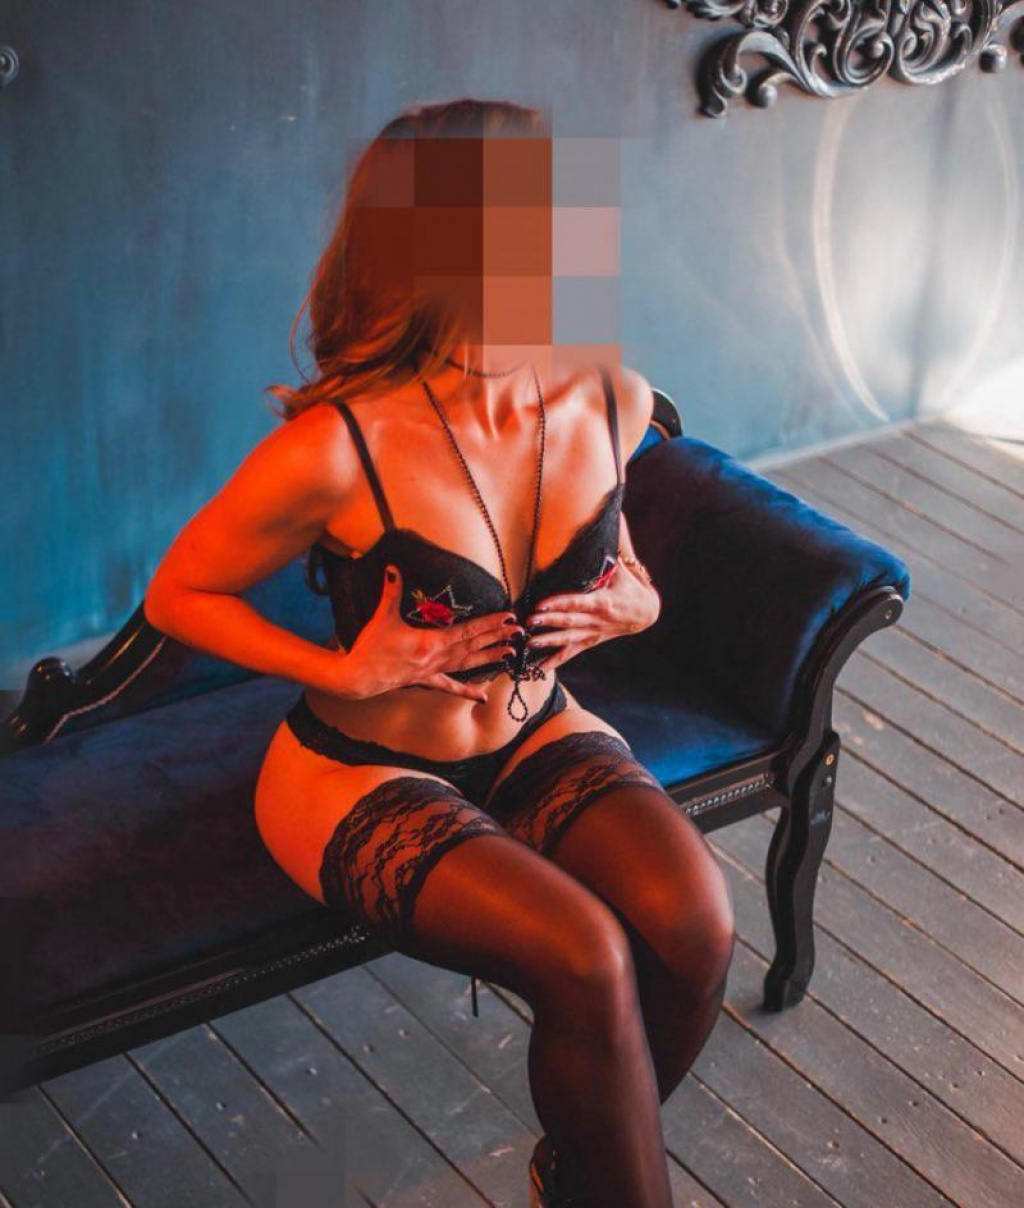 Стася: Проститутка-индивидуалка в Воронеже